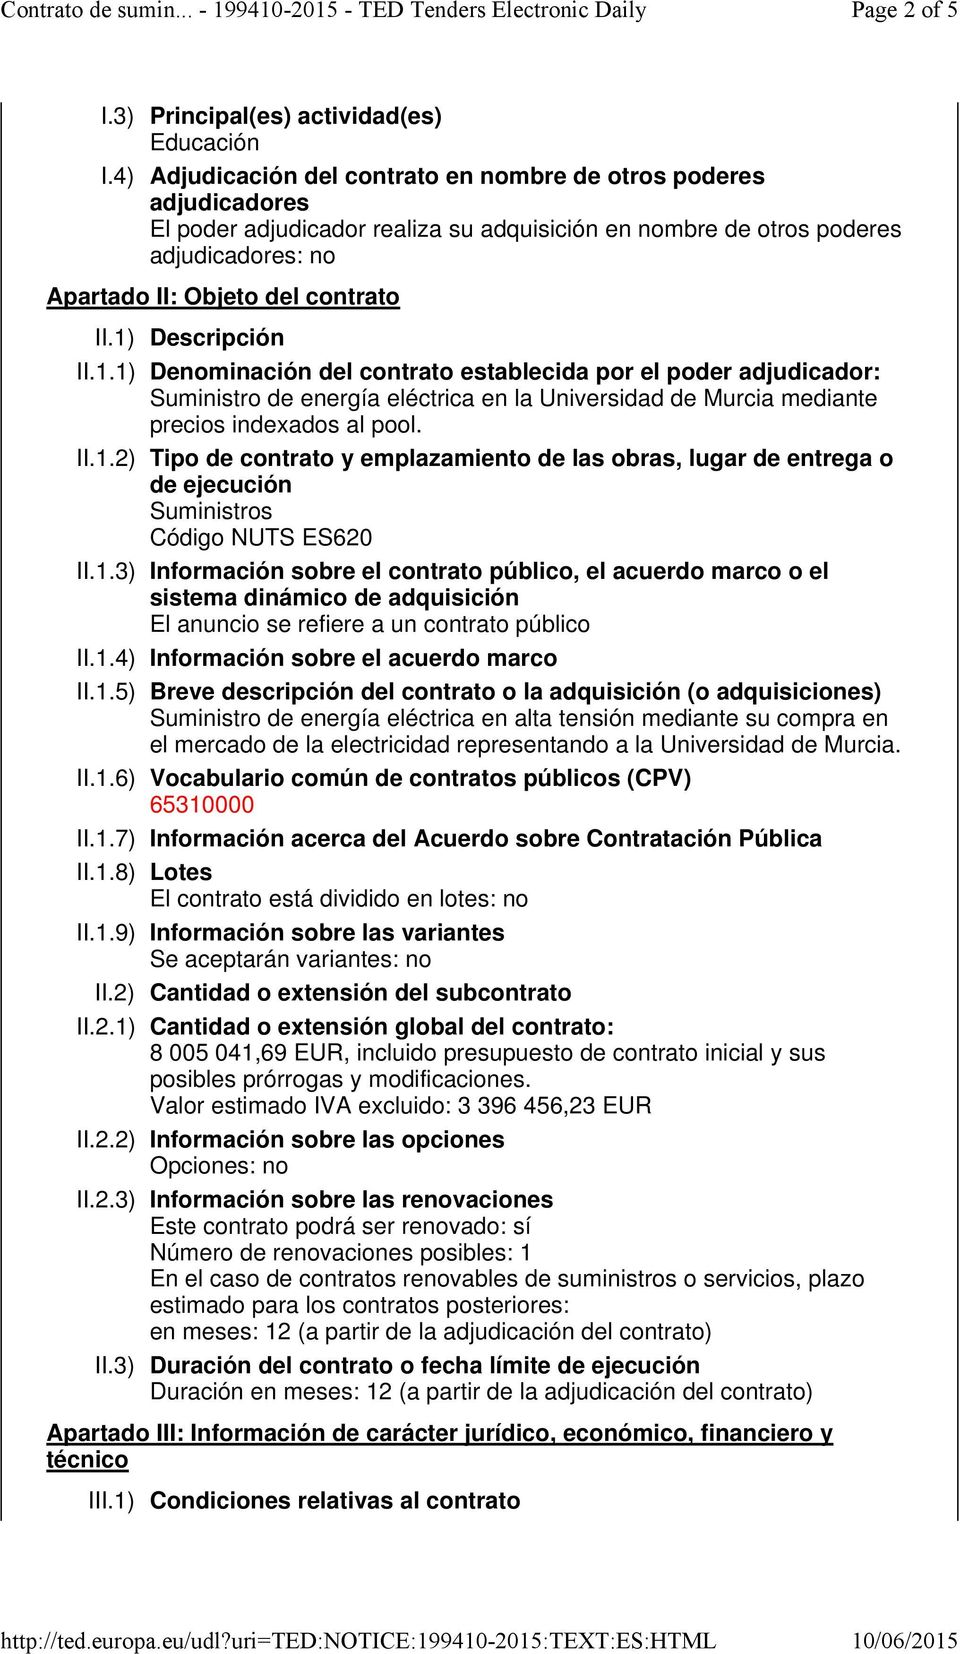 1) Descripción II.1.1) Denominación del contrato establecida por el poder adjudicador: Suministro de energía eléctrica en la Universidad de Murcia mediante precios indexados al pool. II.1.2) Tipo de contrato y emplazamiento de las obras, lugar de entrega o de ejecución Código NUTS ES620 II.